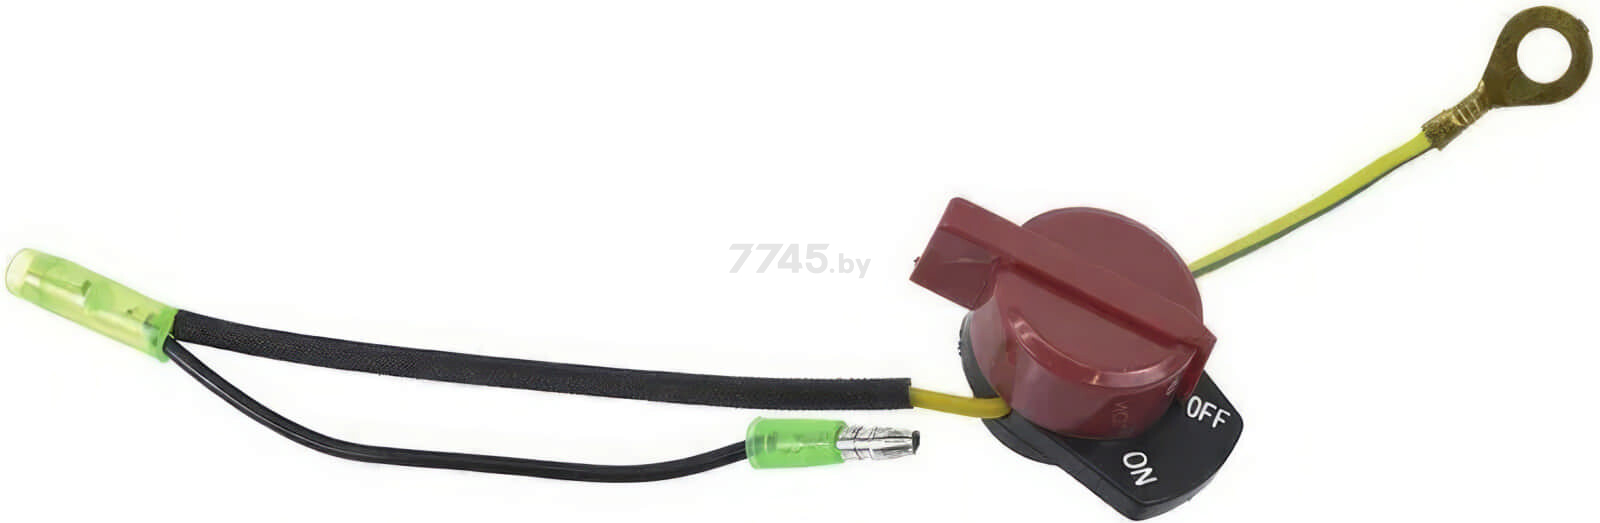 Выключатель зажигания CHAMPION G100HK-420HK/BC4311,GP40-52,GTP80-101E,GHP40-2/PC5332F/ST556,656 три провода (271660028-0001) - Фото 2